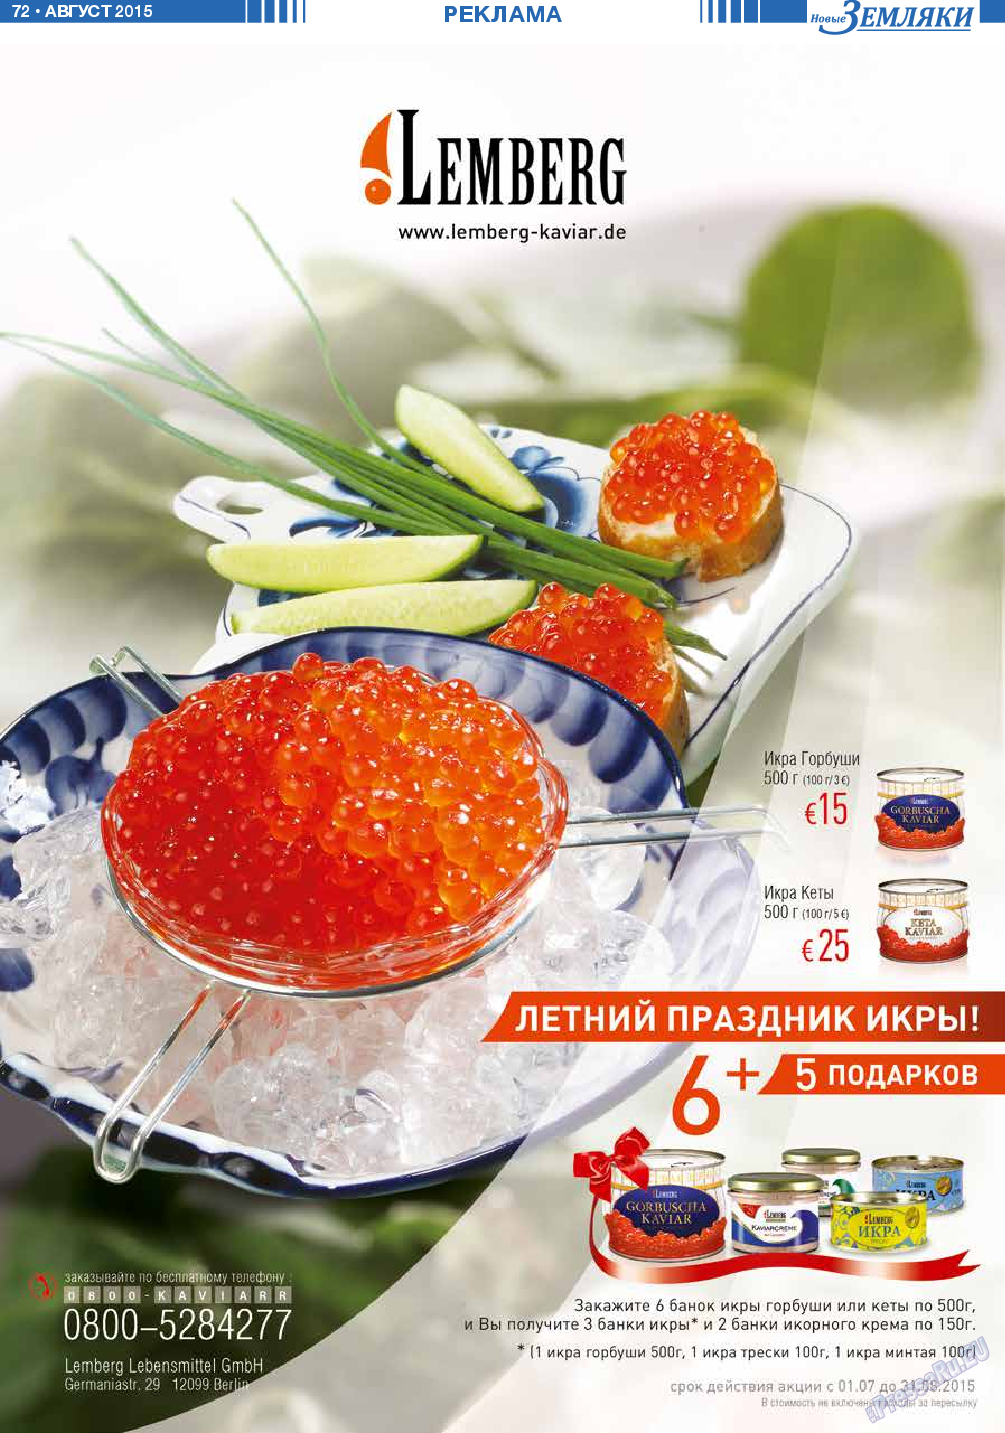 Новые Земляки, газета. 2015 №8 стр.72